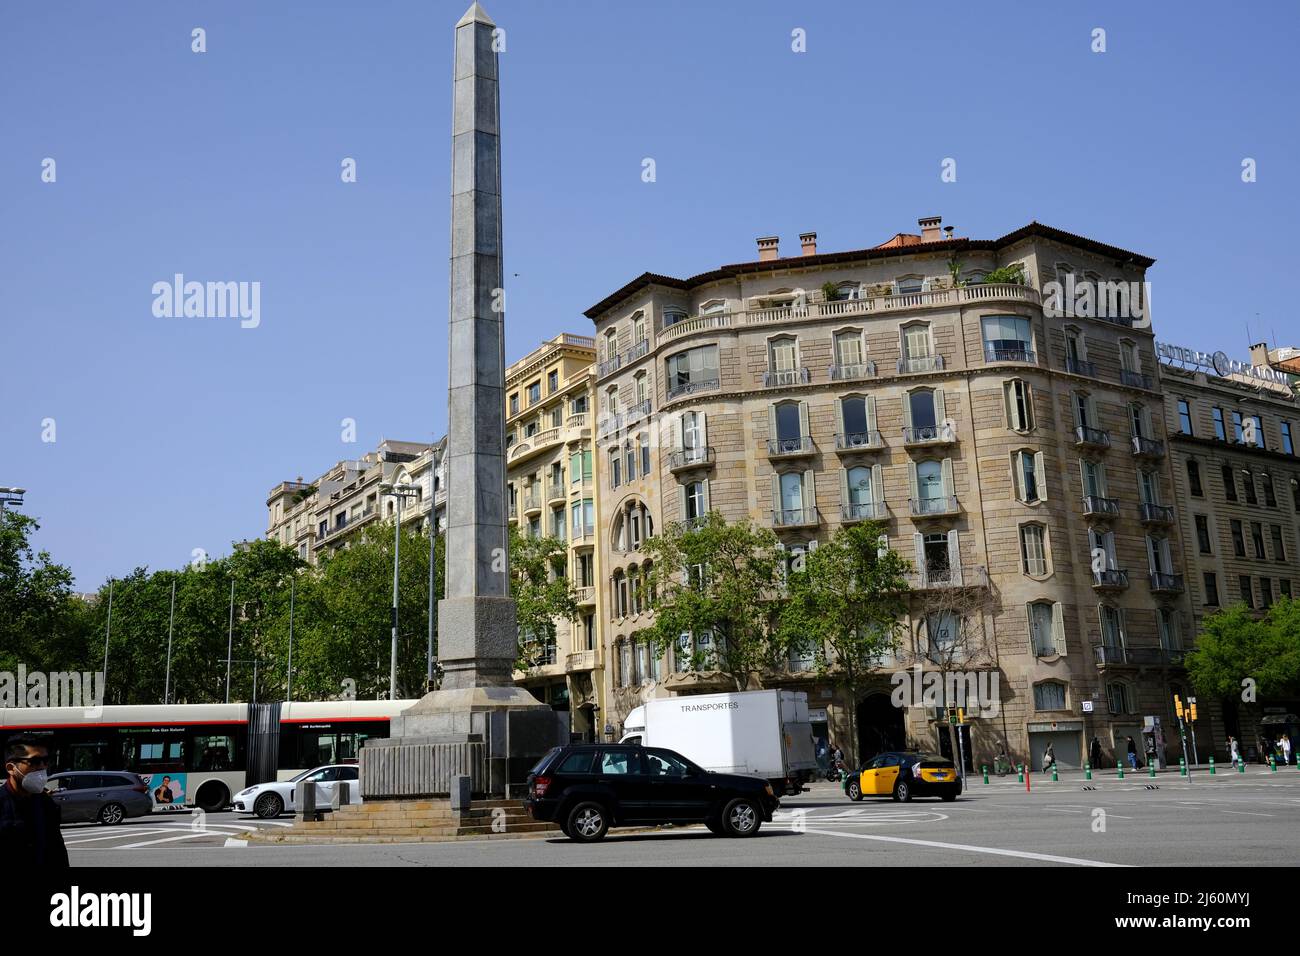 Street Scene in Obelisk Square in Barcelona, Spain Stock Photo